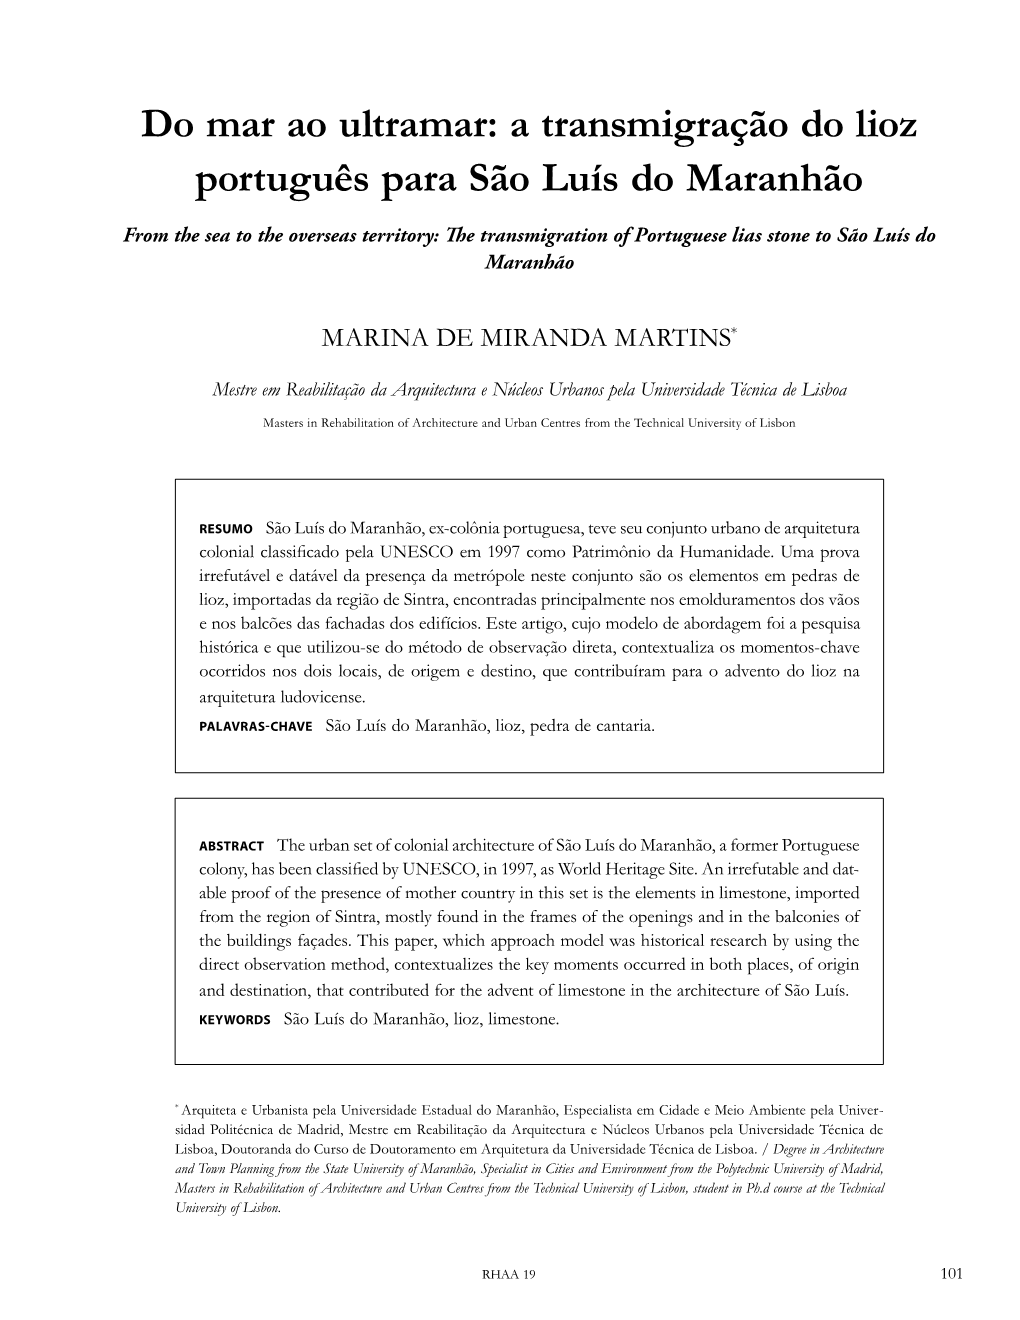 A Transmigração Do Lioz Português Para São Luís Do Maranhão